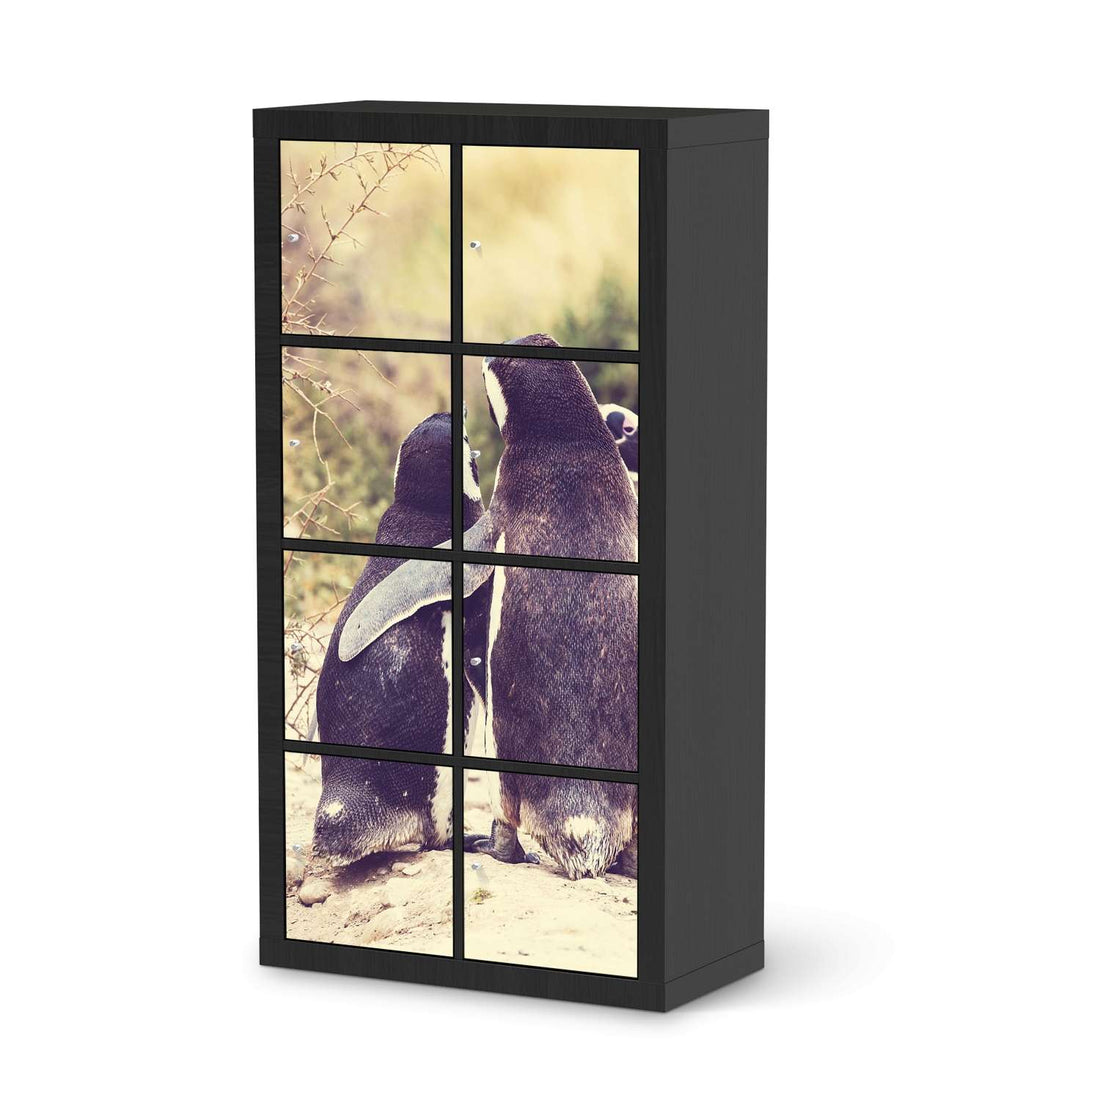 Folie für Möbel Pingu Friendship - IKEA Kallax Regal 8 Türen - schwarz